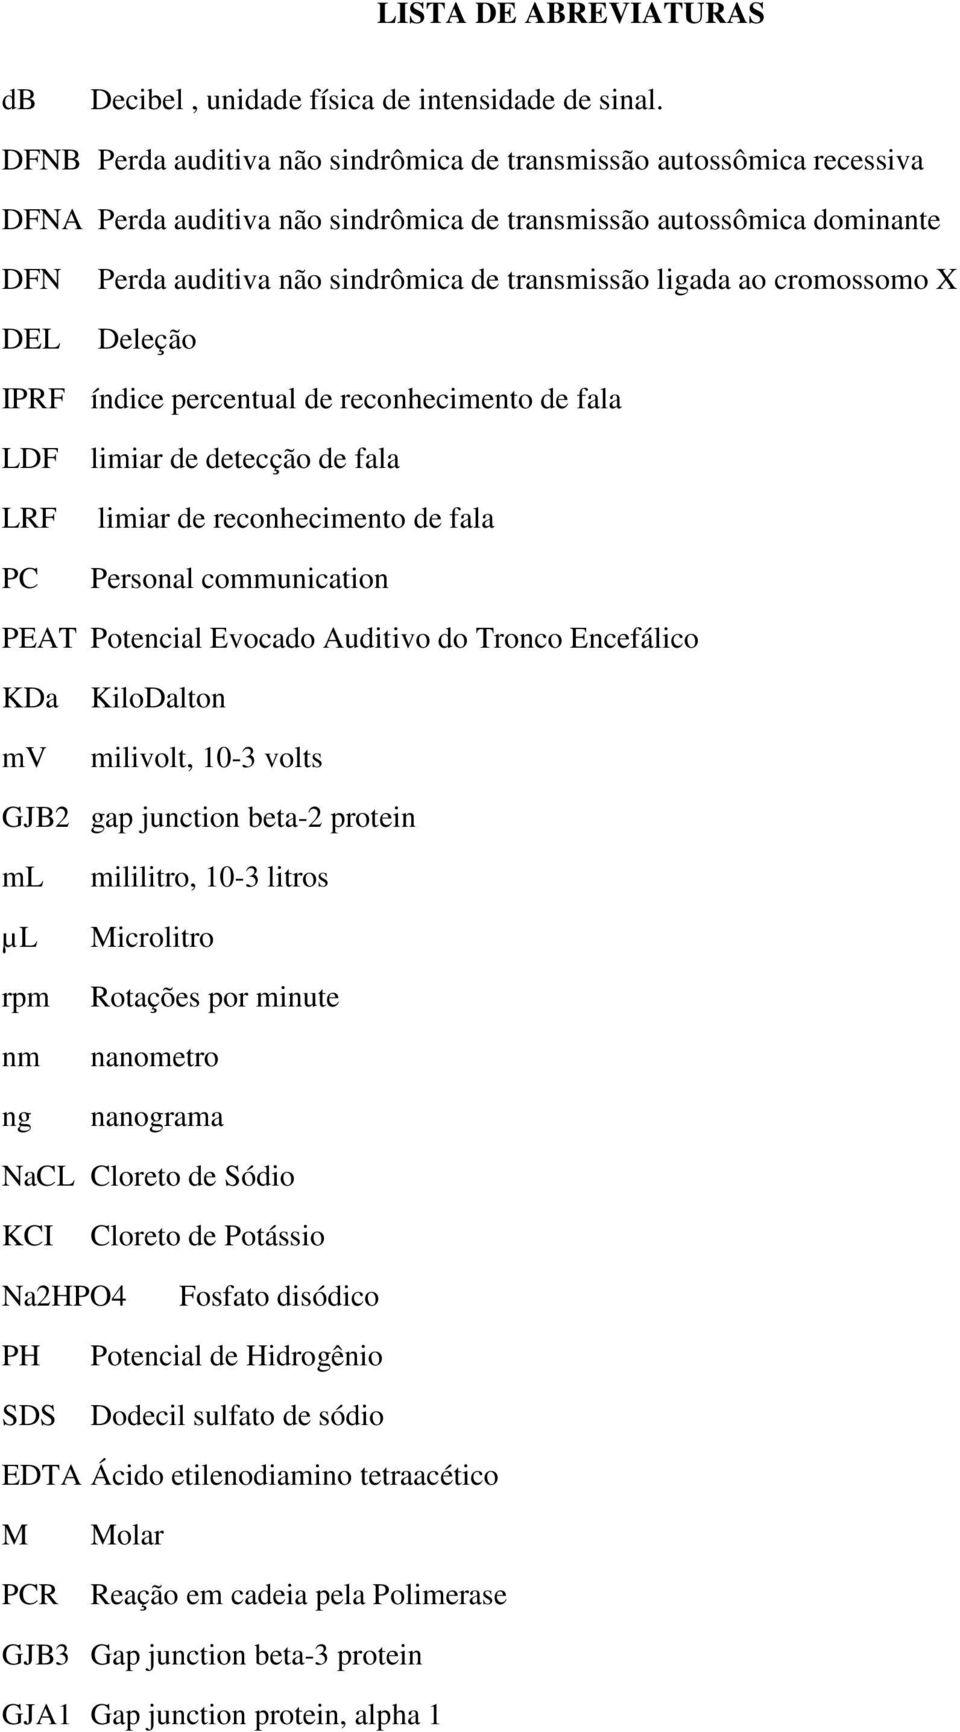 ligada ao cromossomo X Deleção IPRF índice percentual de reconhecimento de fala LDF LRF PC limiar de detecção de fala limiar de reconhecimento de fala Personal communication PEAT Potencial Evocado